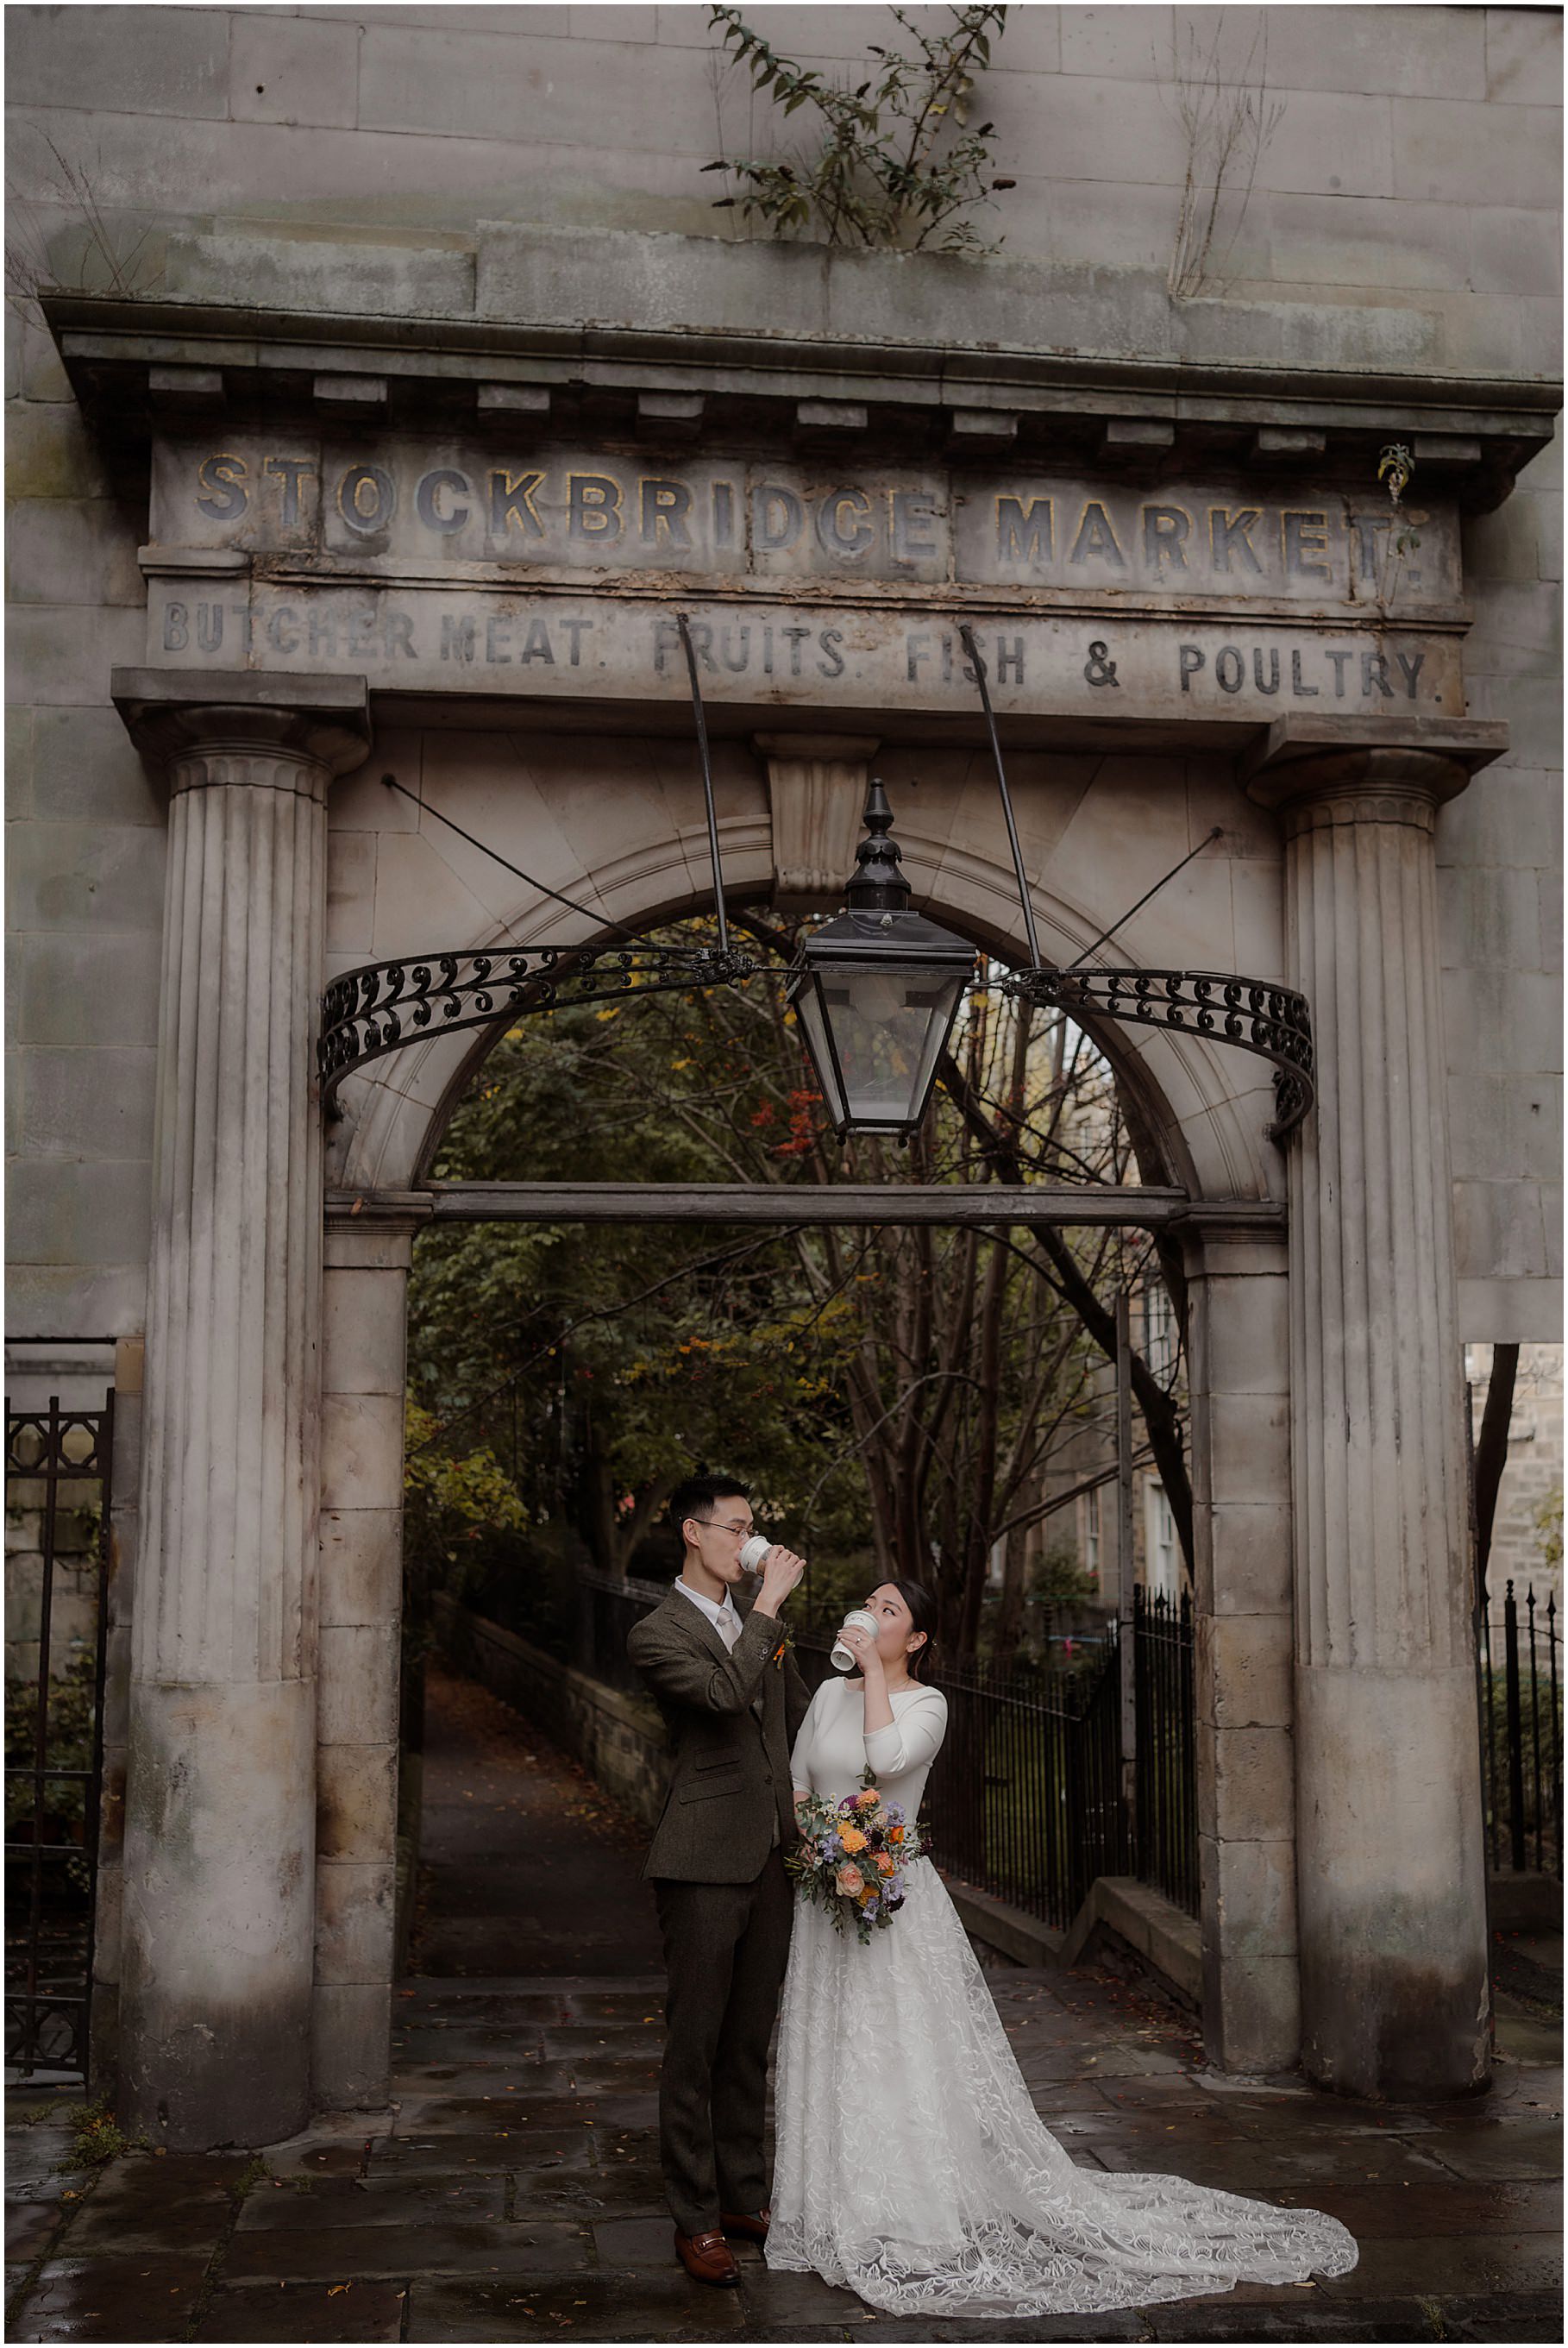 Stockbridge elopement photos in Edinburgh - Edinburgh elopement photography